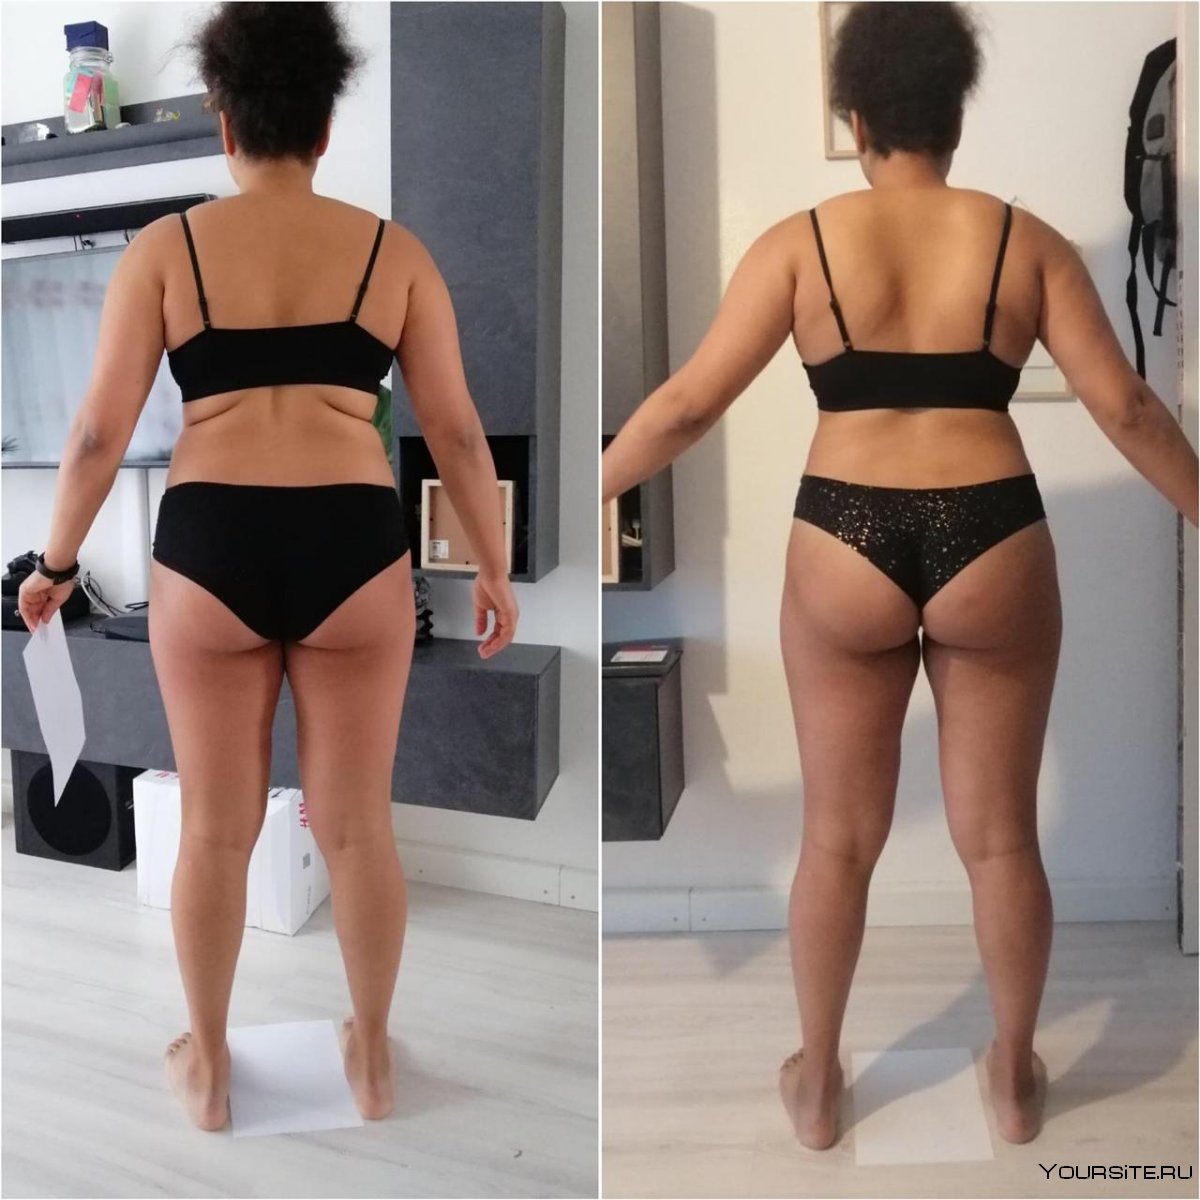 Спина до и после похудения